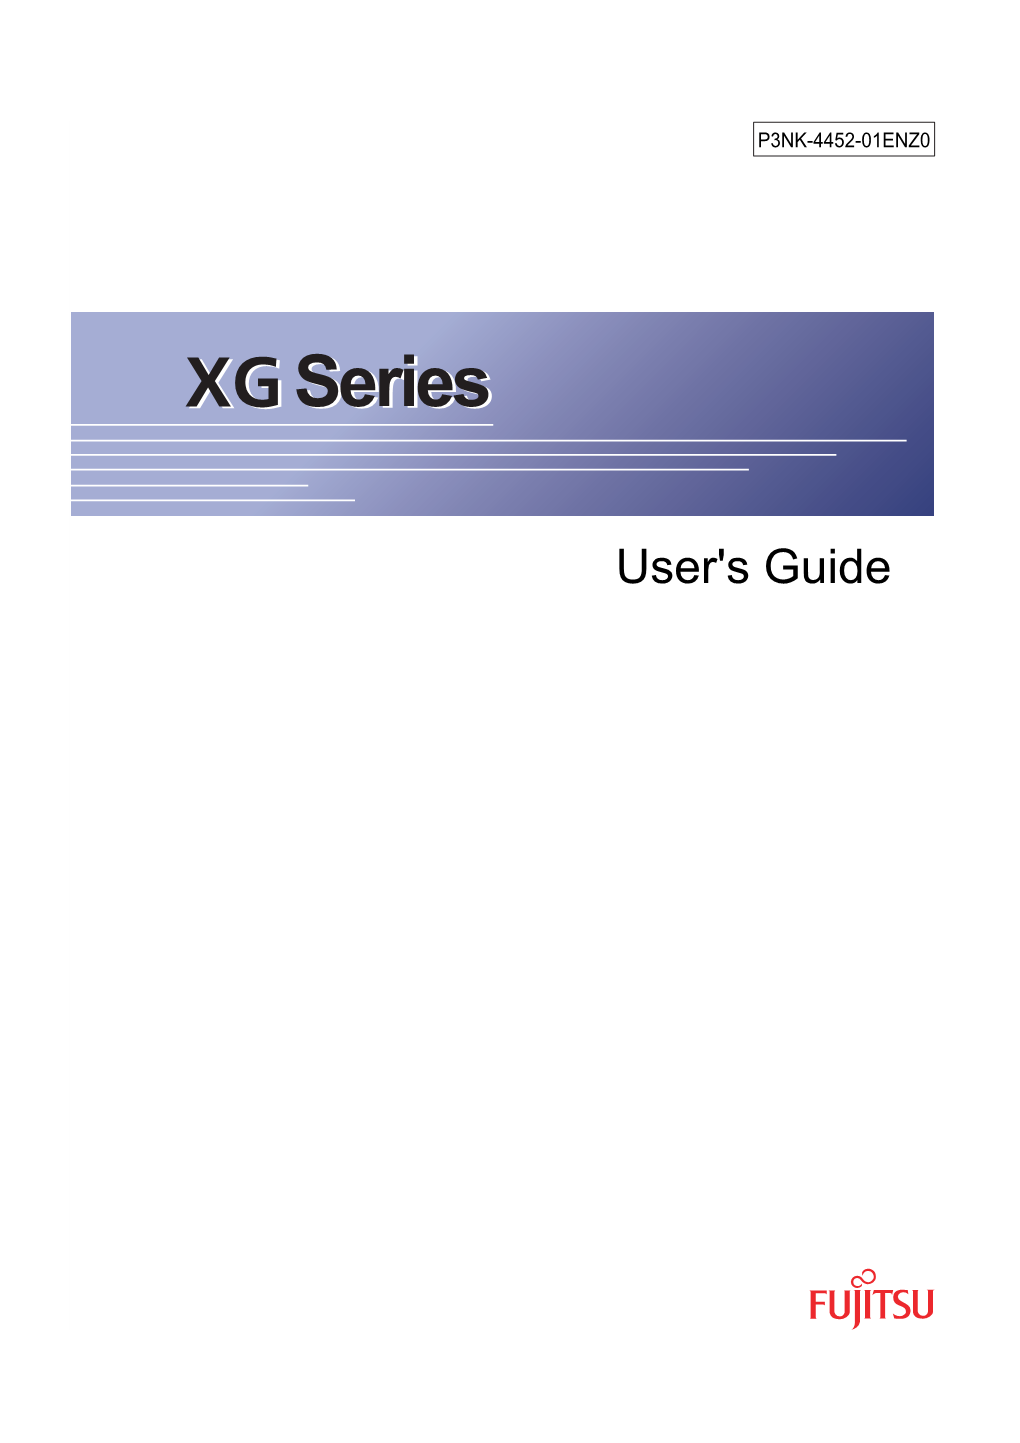 XG Series User's Guide